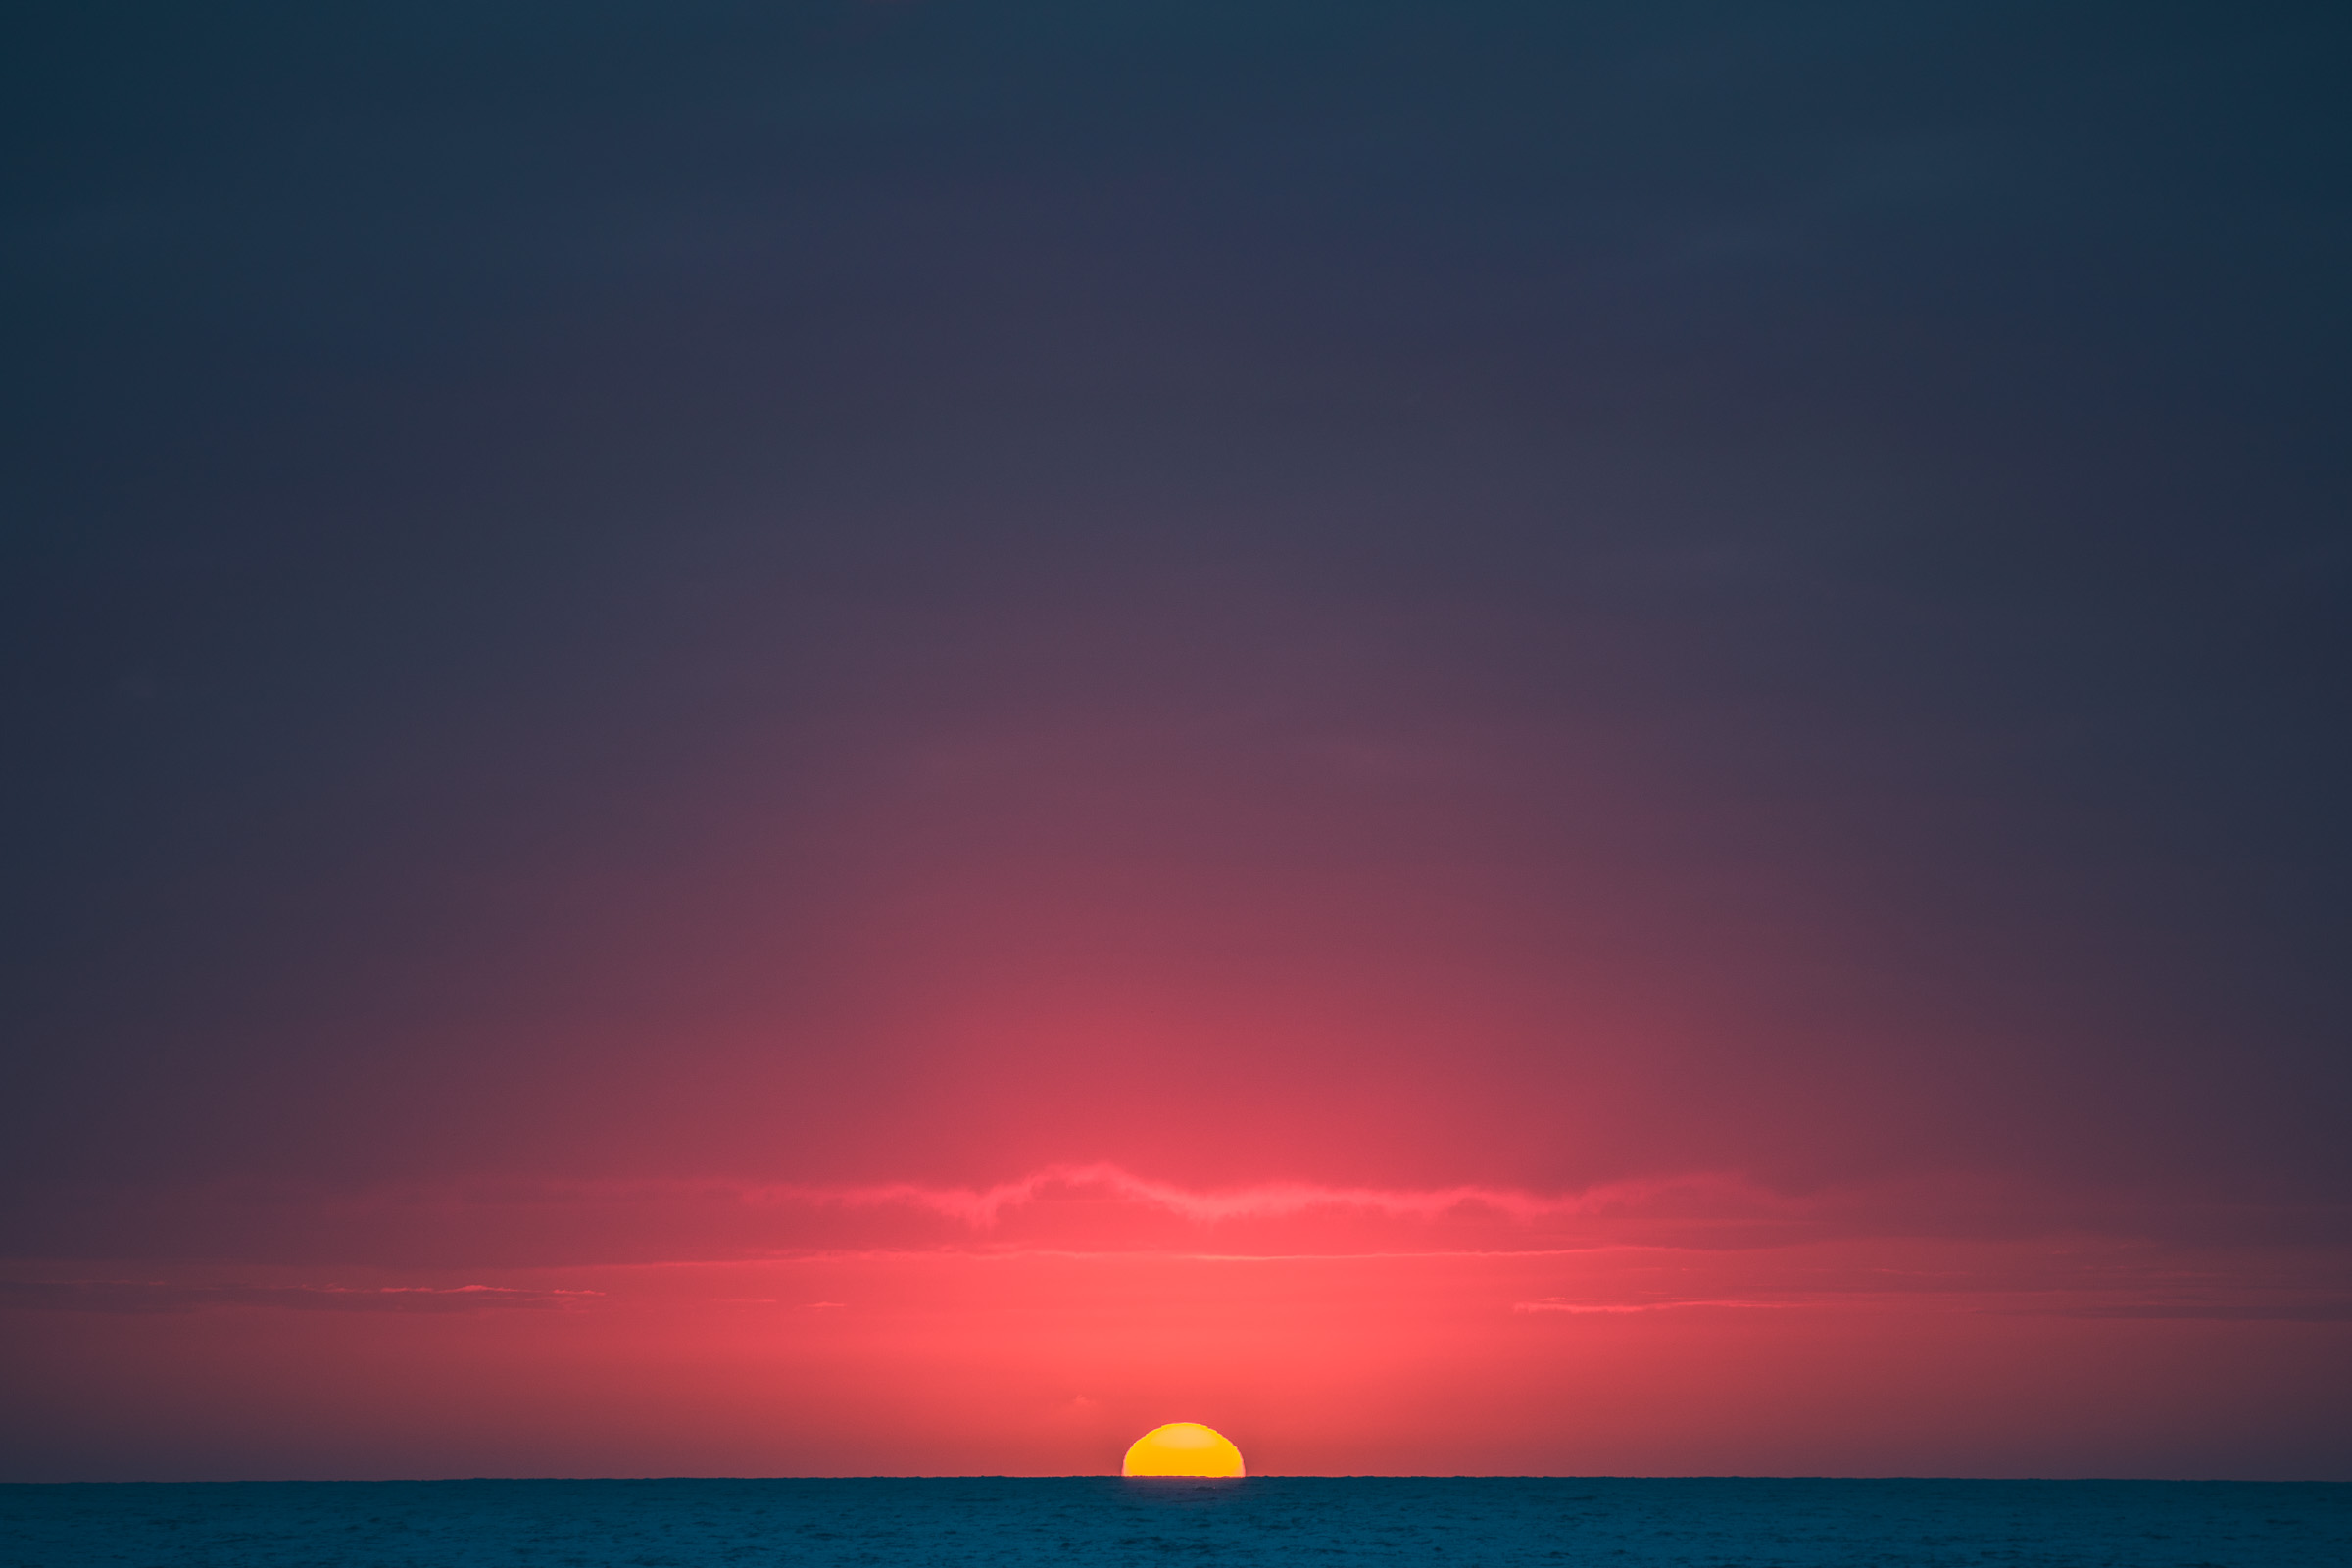 The sun sets on the ocean in Todos Santos, Mexico